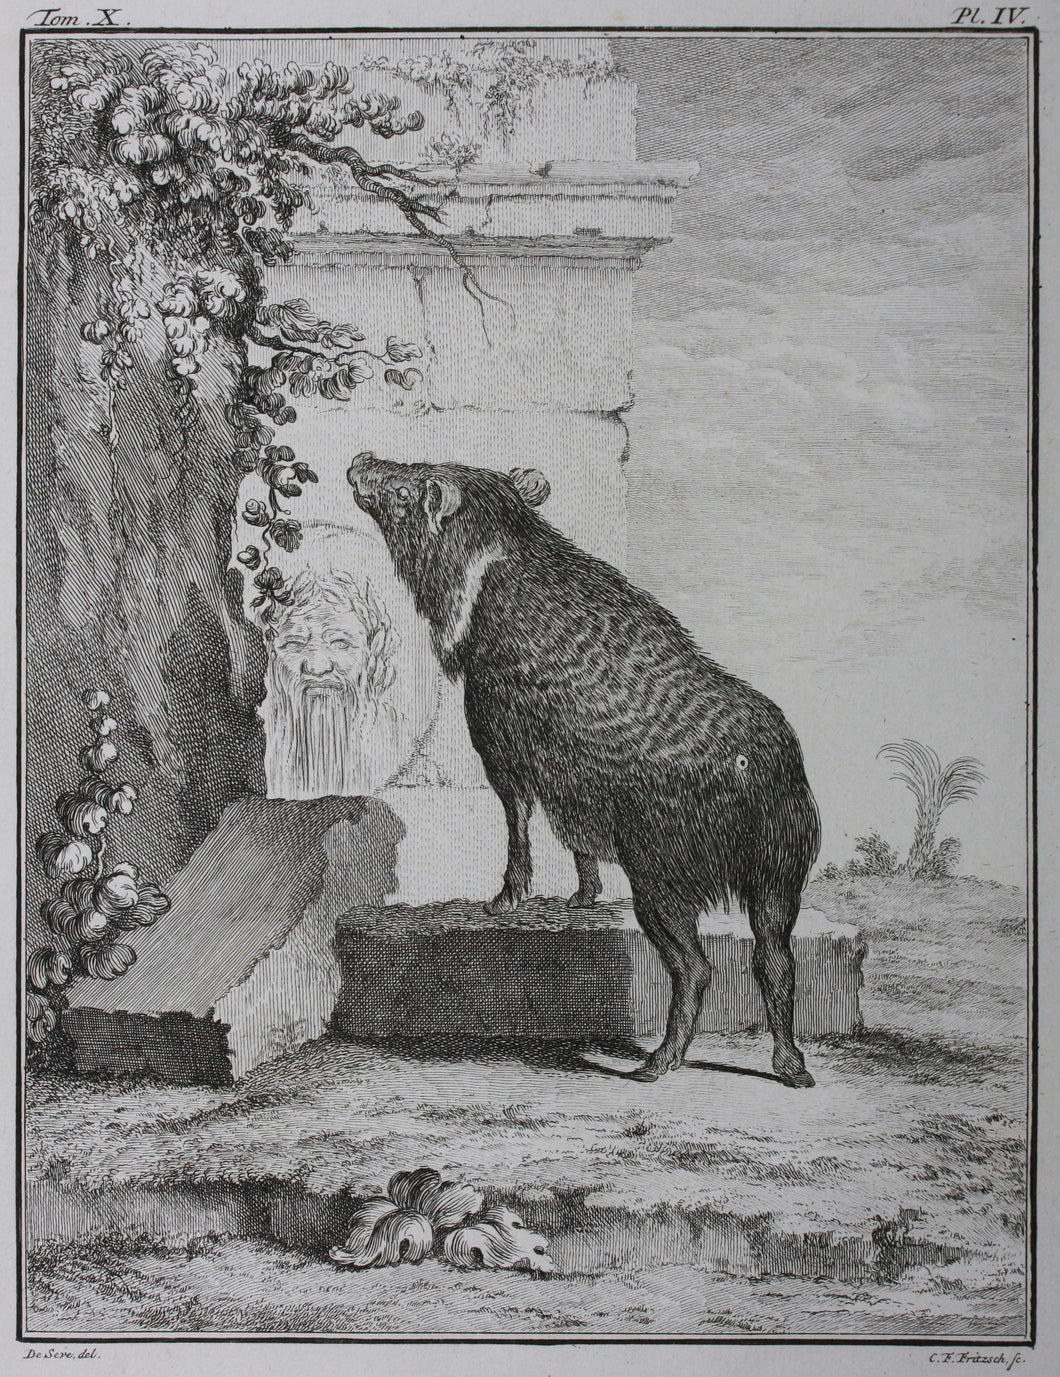 Jacques de Sève, after. Pecari in antique ruins. Engraved by C.F. Fritzsch. C. 1772.